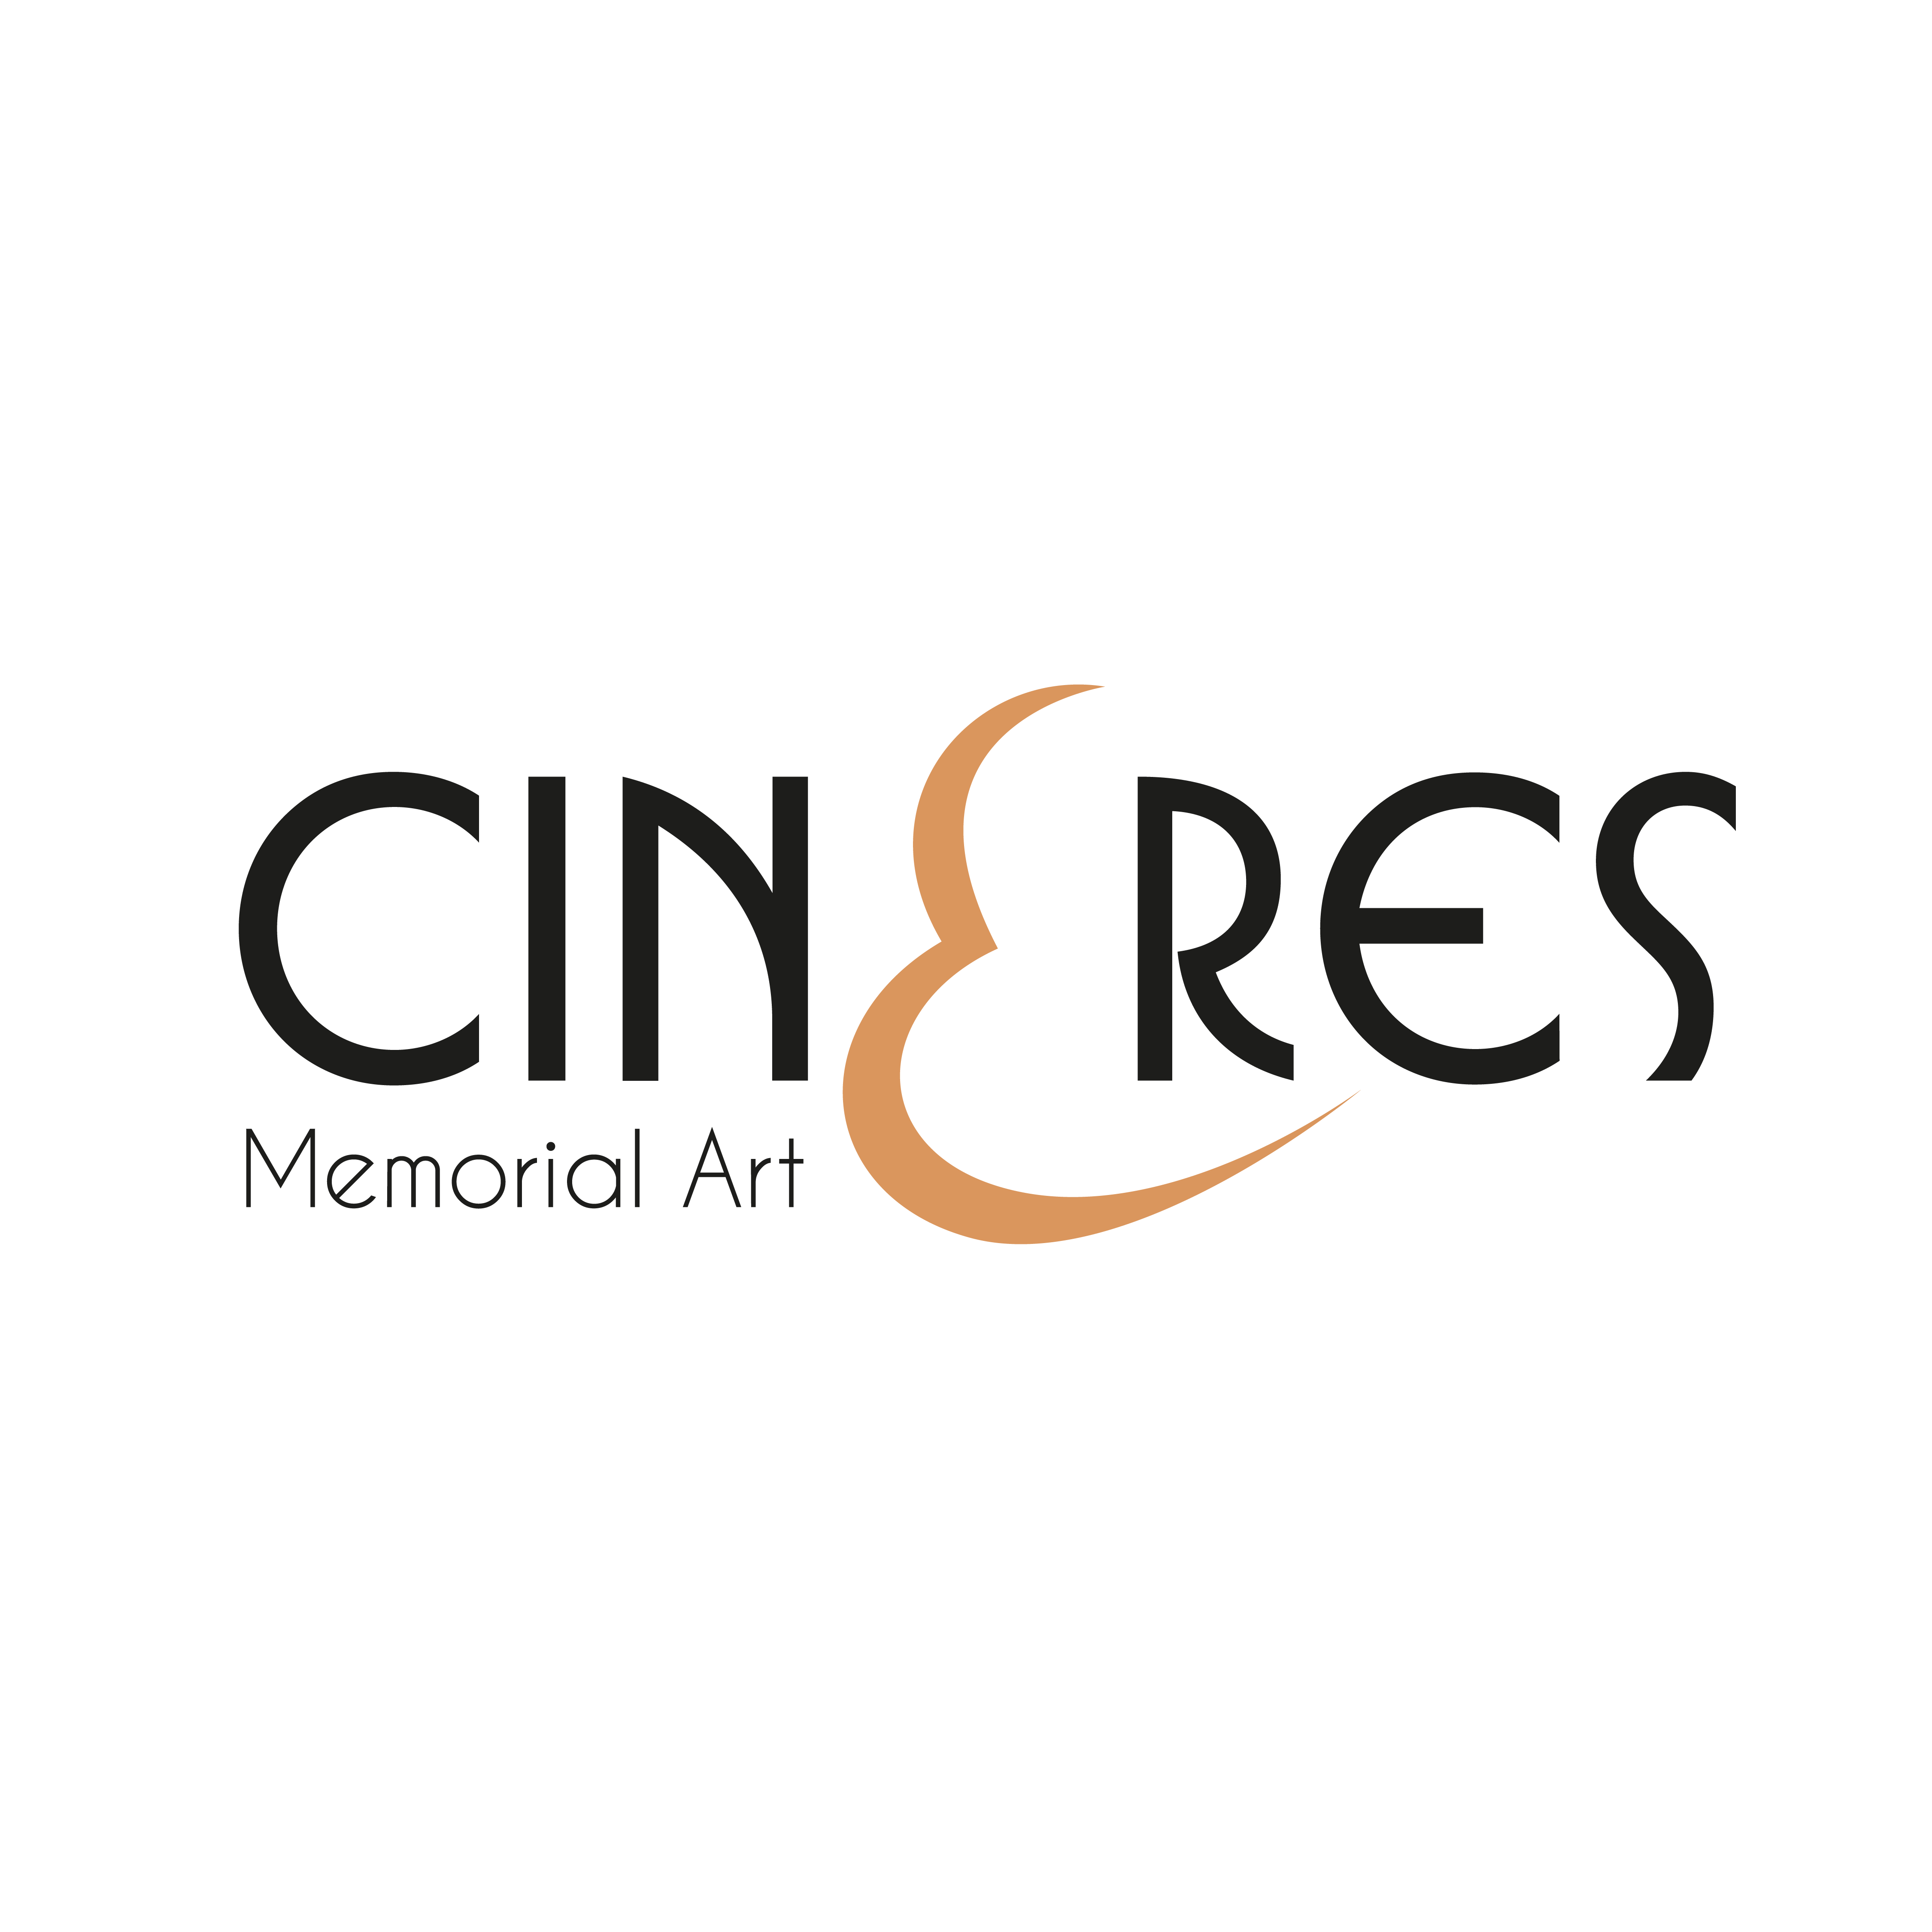 Cineres Logo